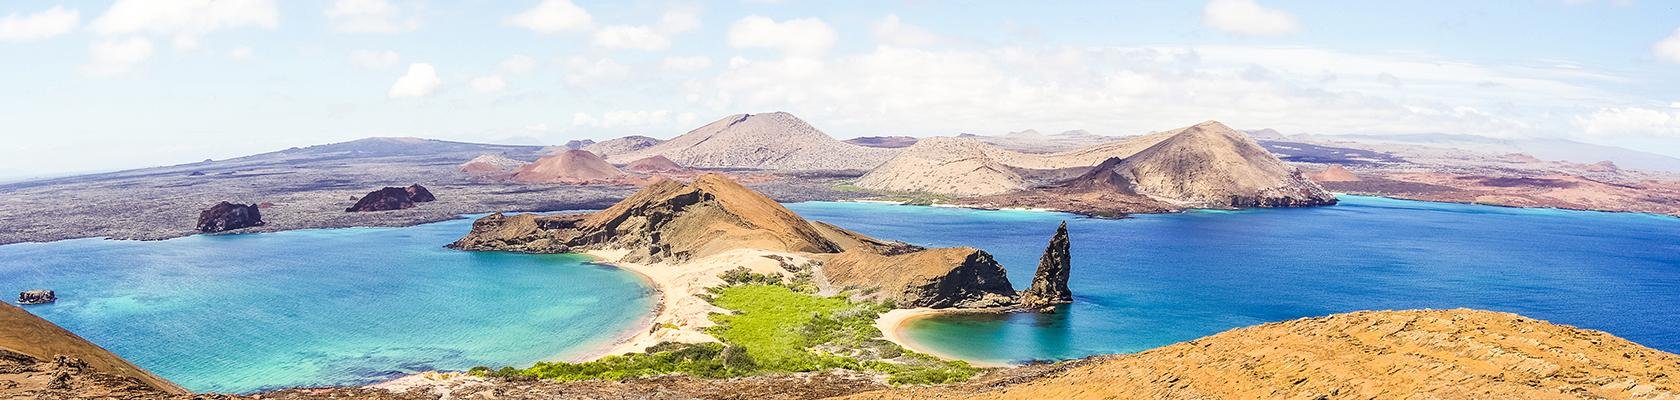 Galápagos Nationaal Park (Ecuador)